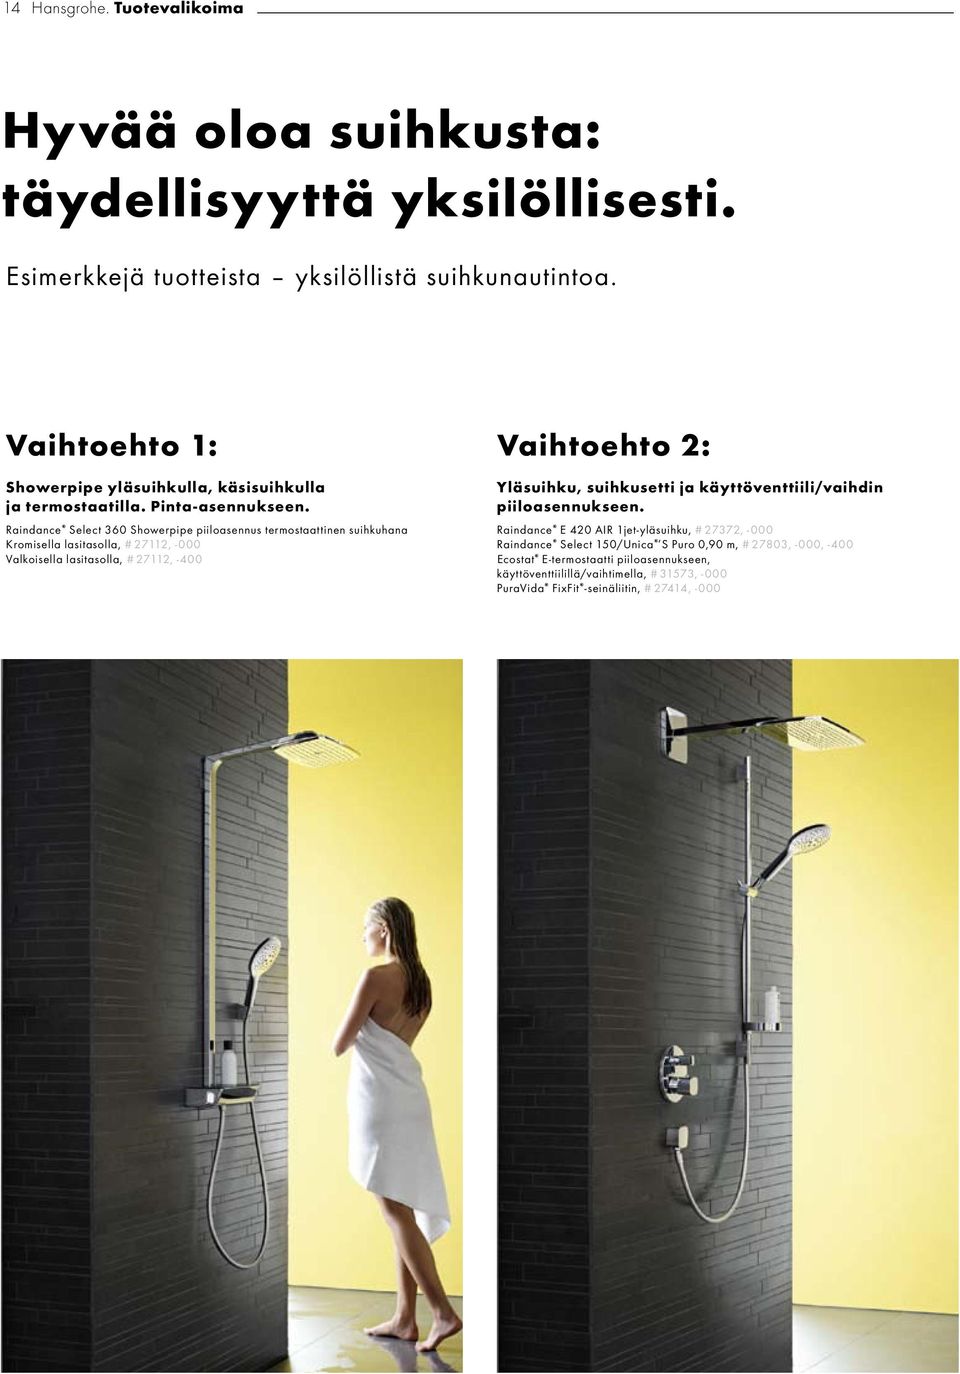 Raindance Select 360 Showerpipe piiloasennus termostaattinen suihkuhana Kromisella lasitasolla, # 27112, -000 Valkoisella lasitasolla, # 27112, -400 Yläsuihku, suihkusetti ja